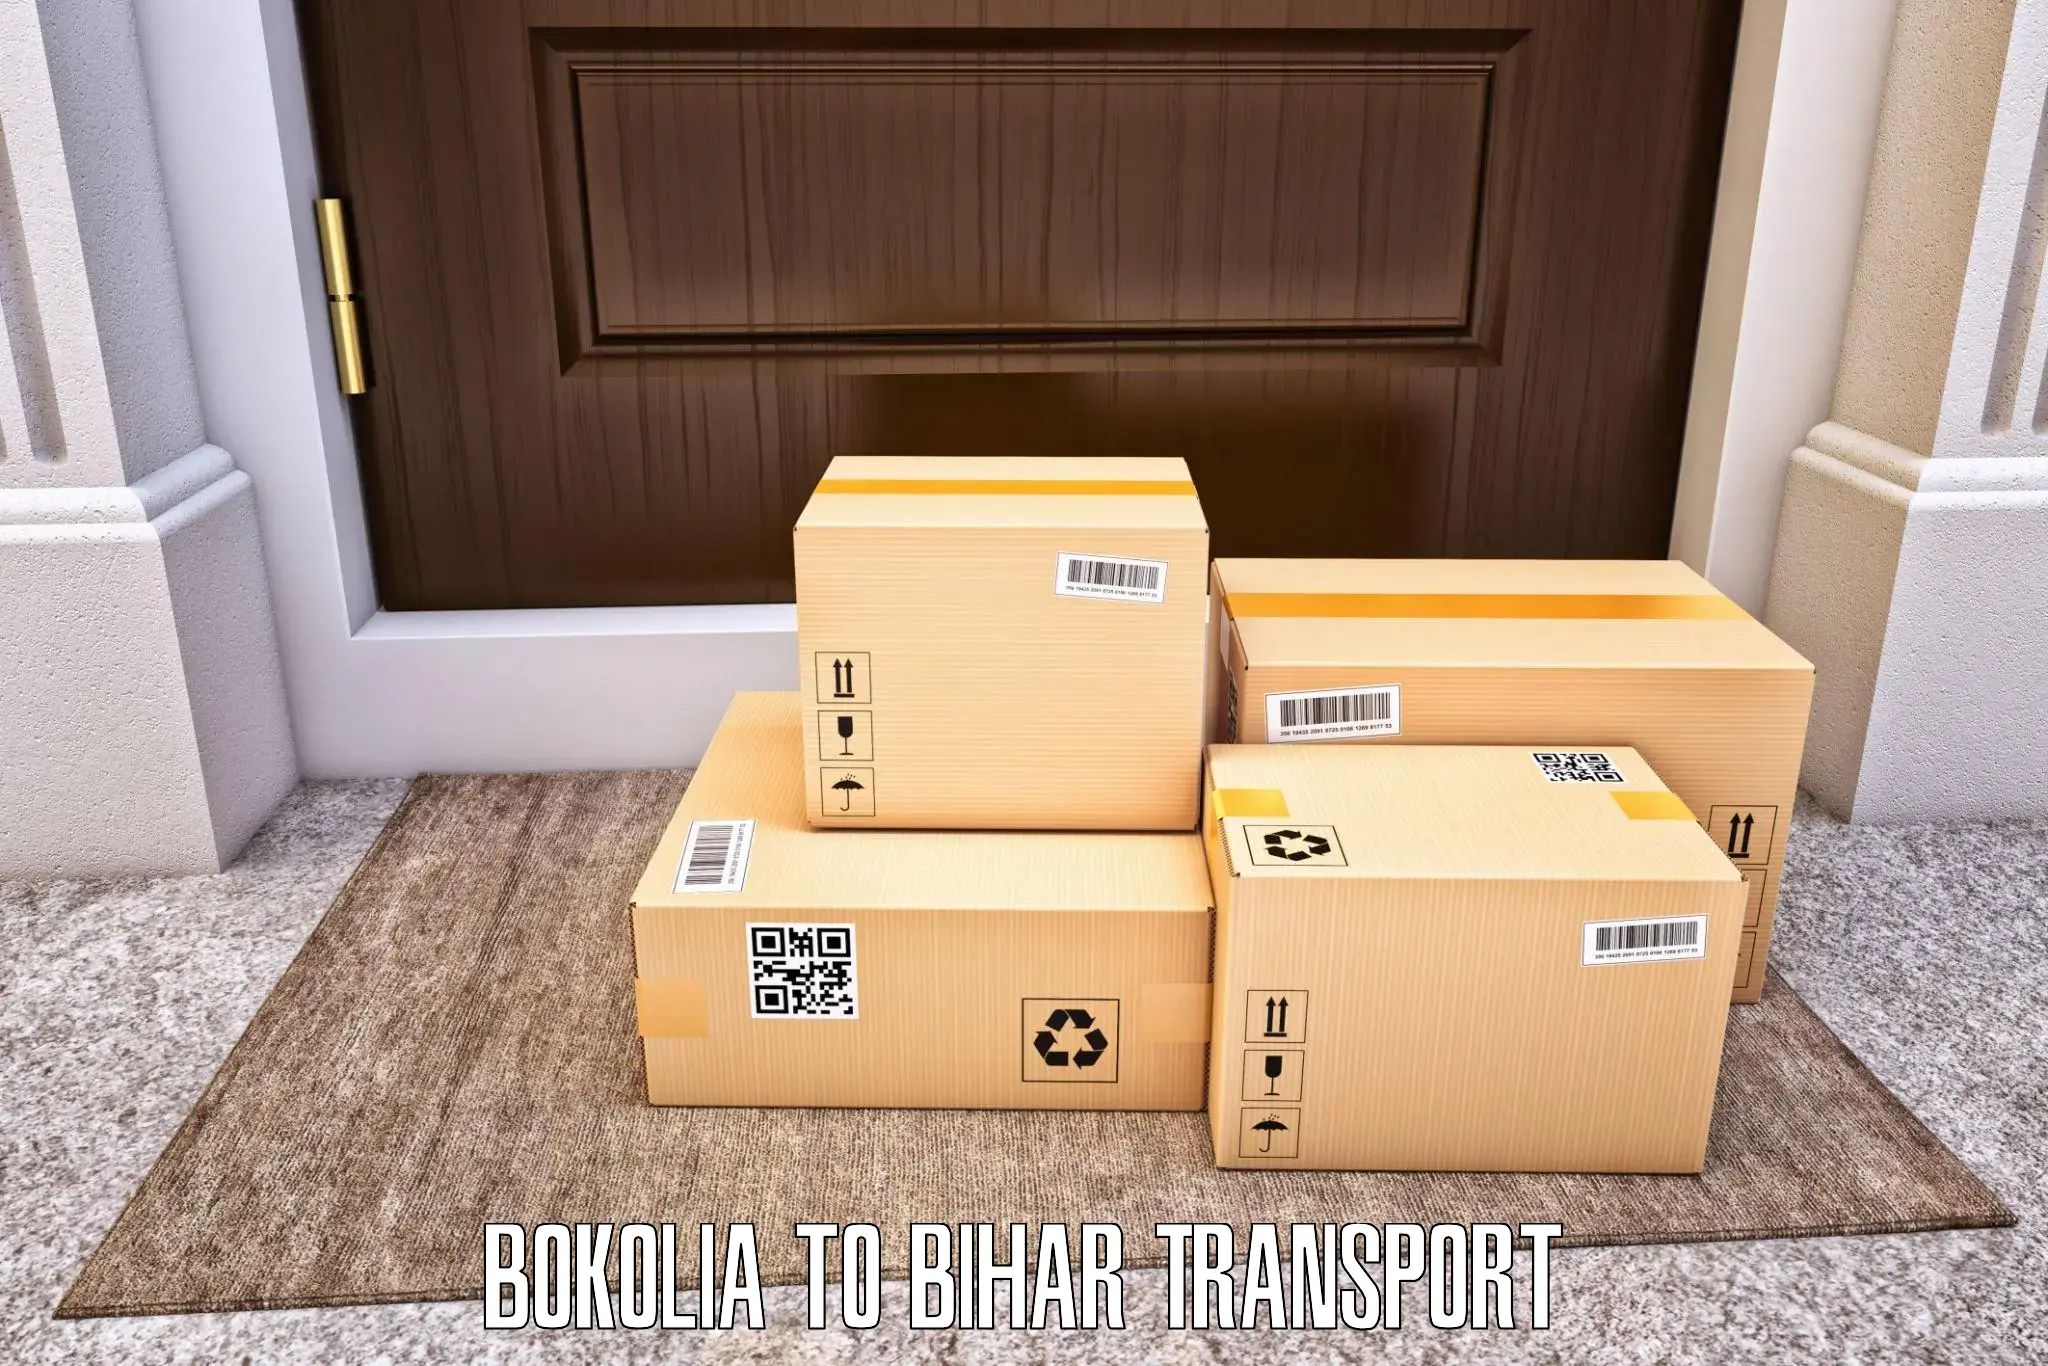 Luggage transport services Bokolia to Ekma